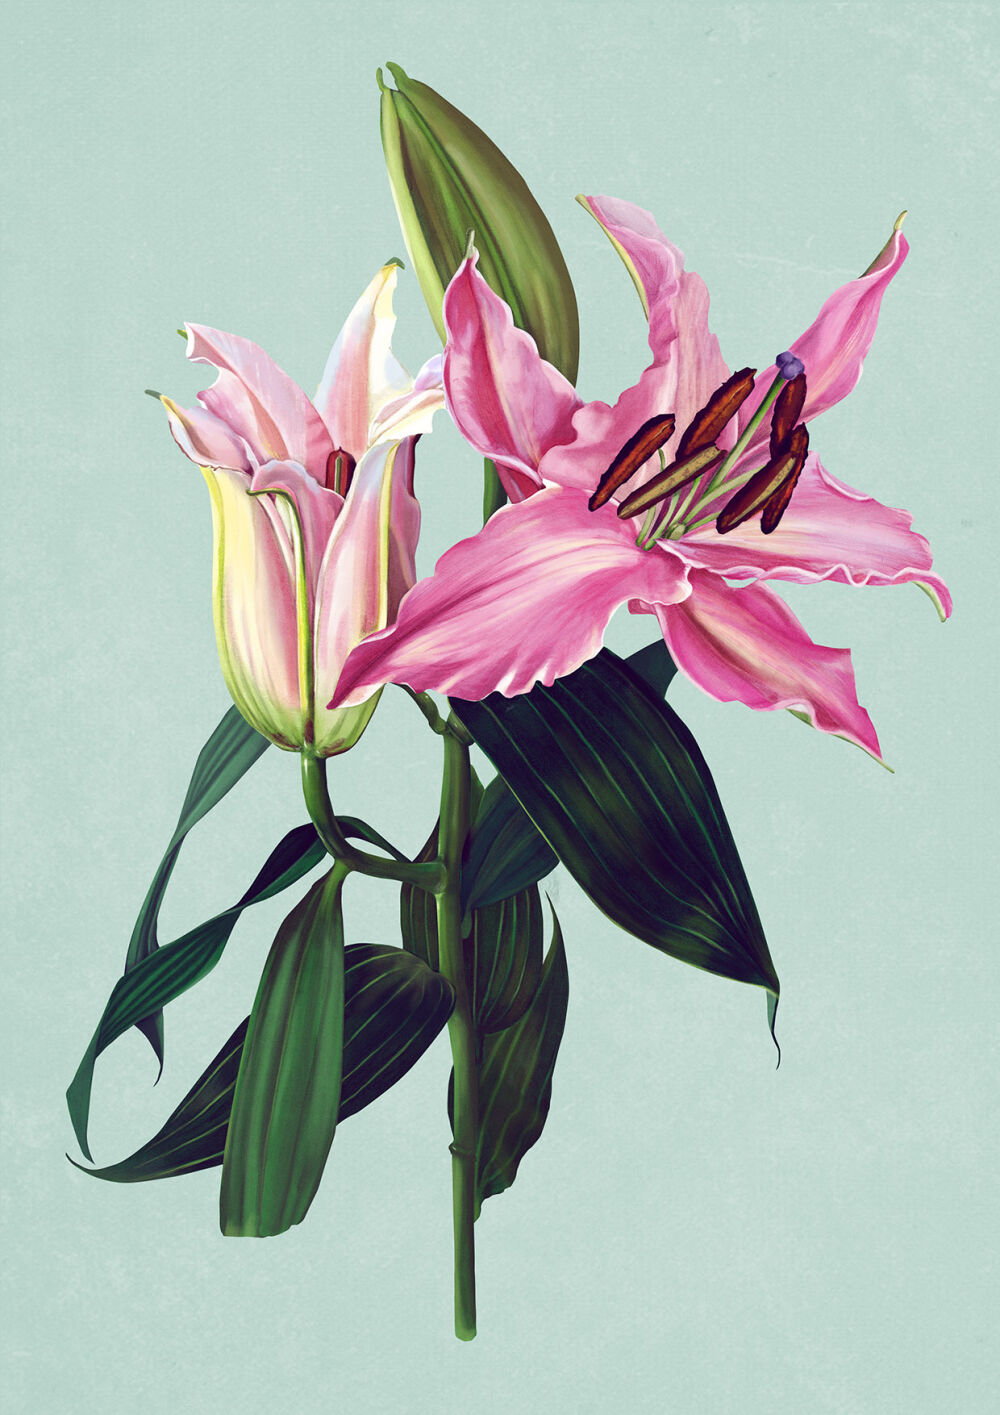 Floral illustration by Eplet